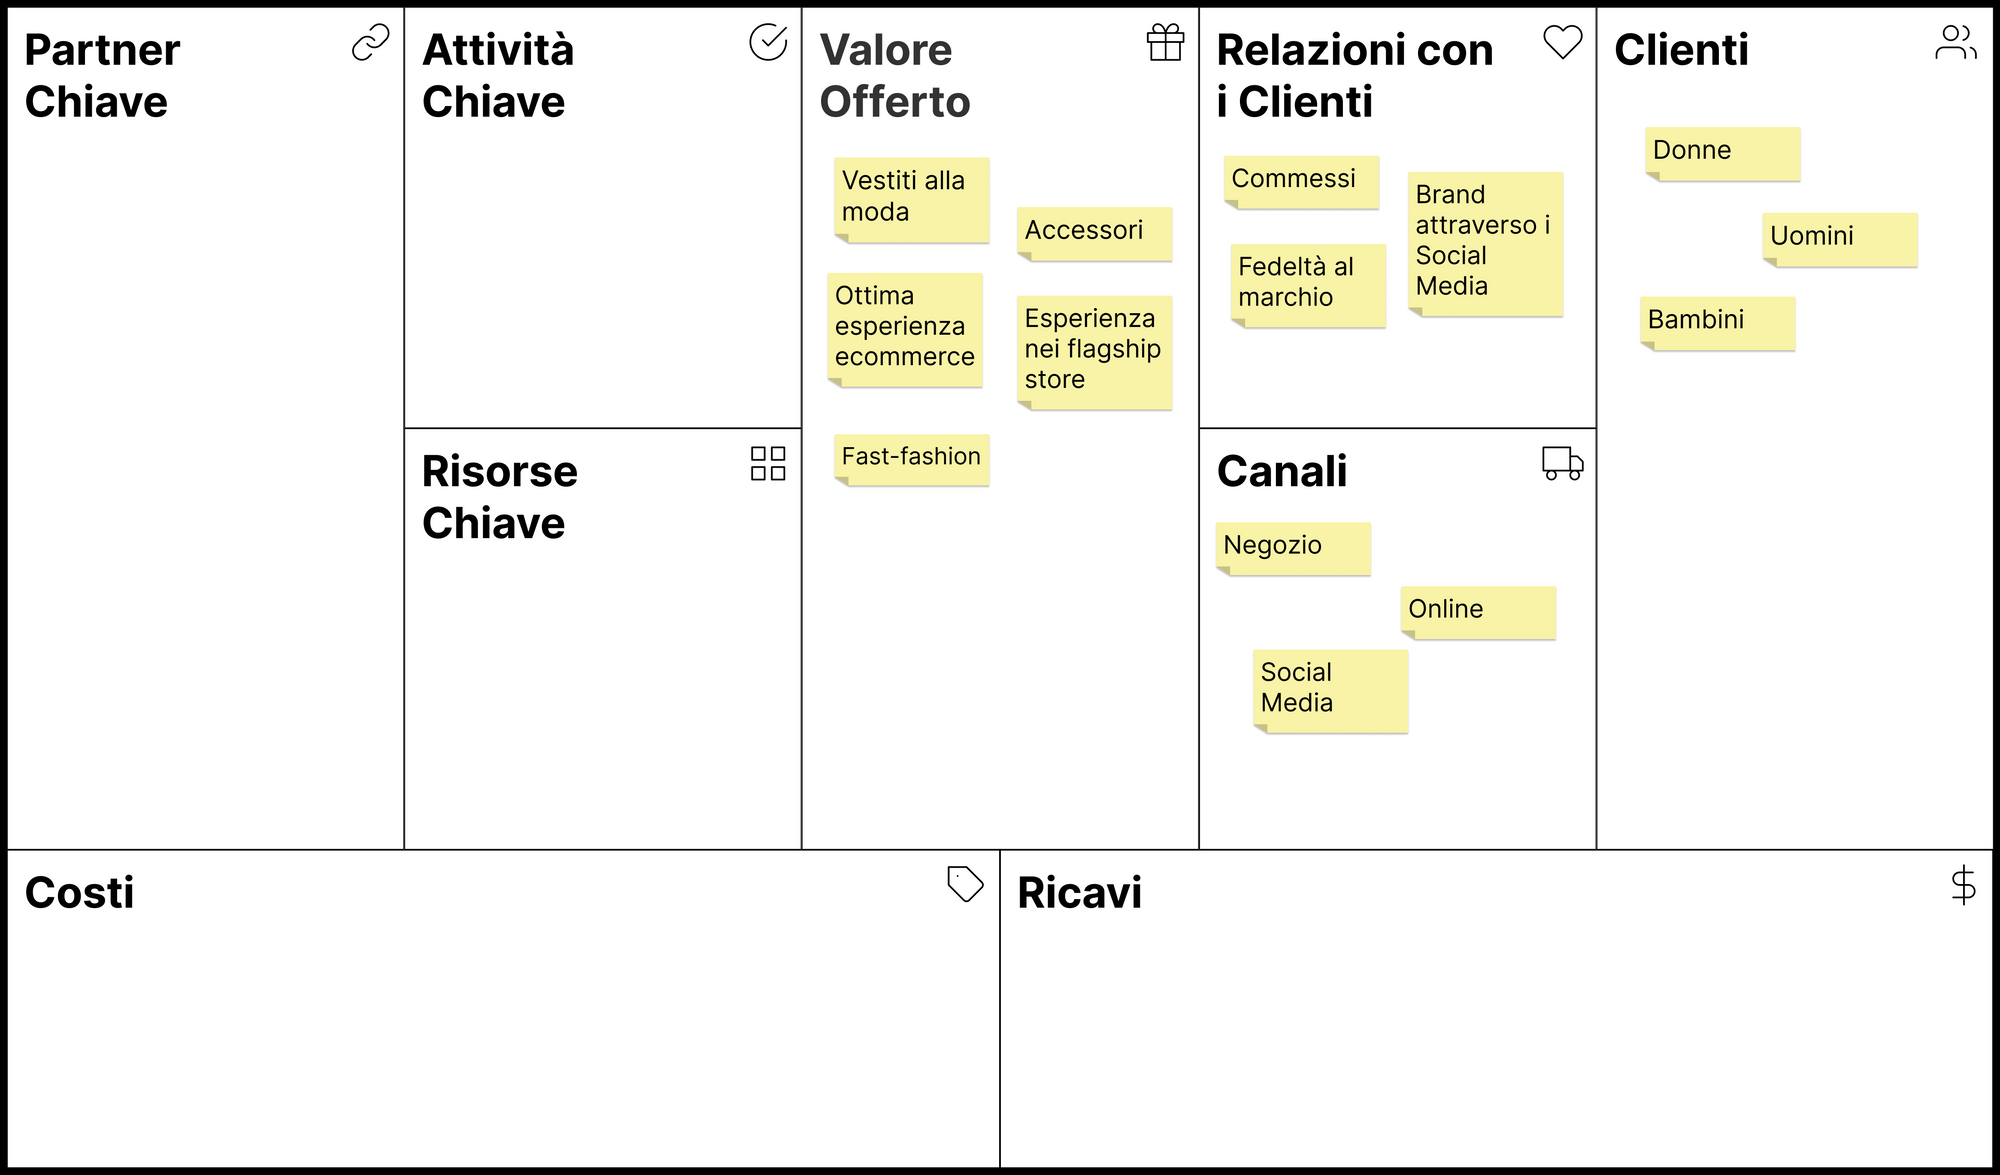 Business Model Canvas - Relazioni con i clienti